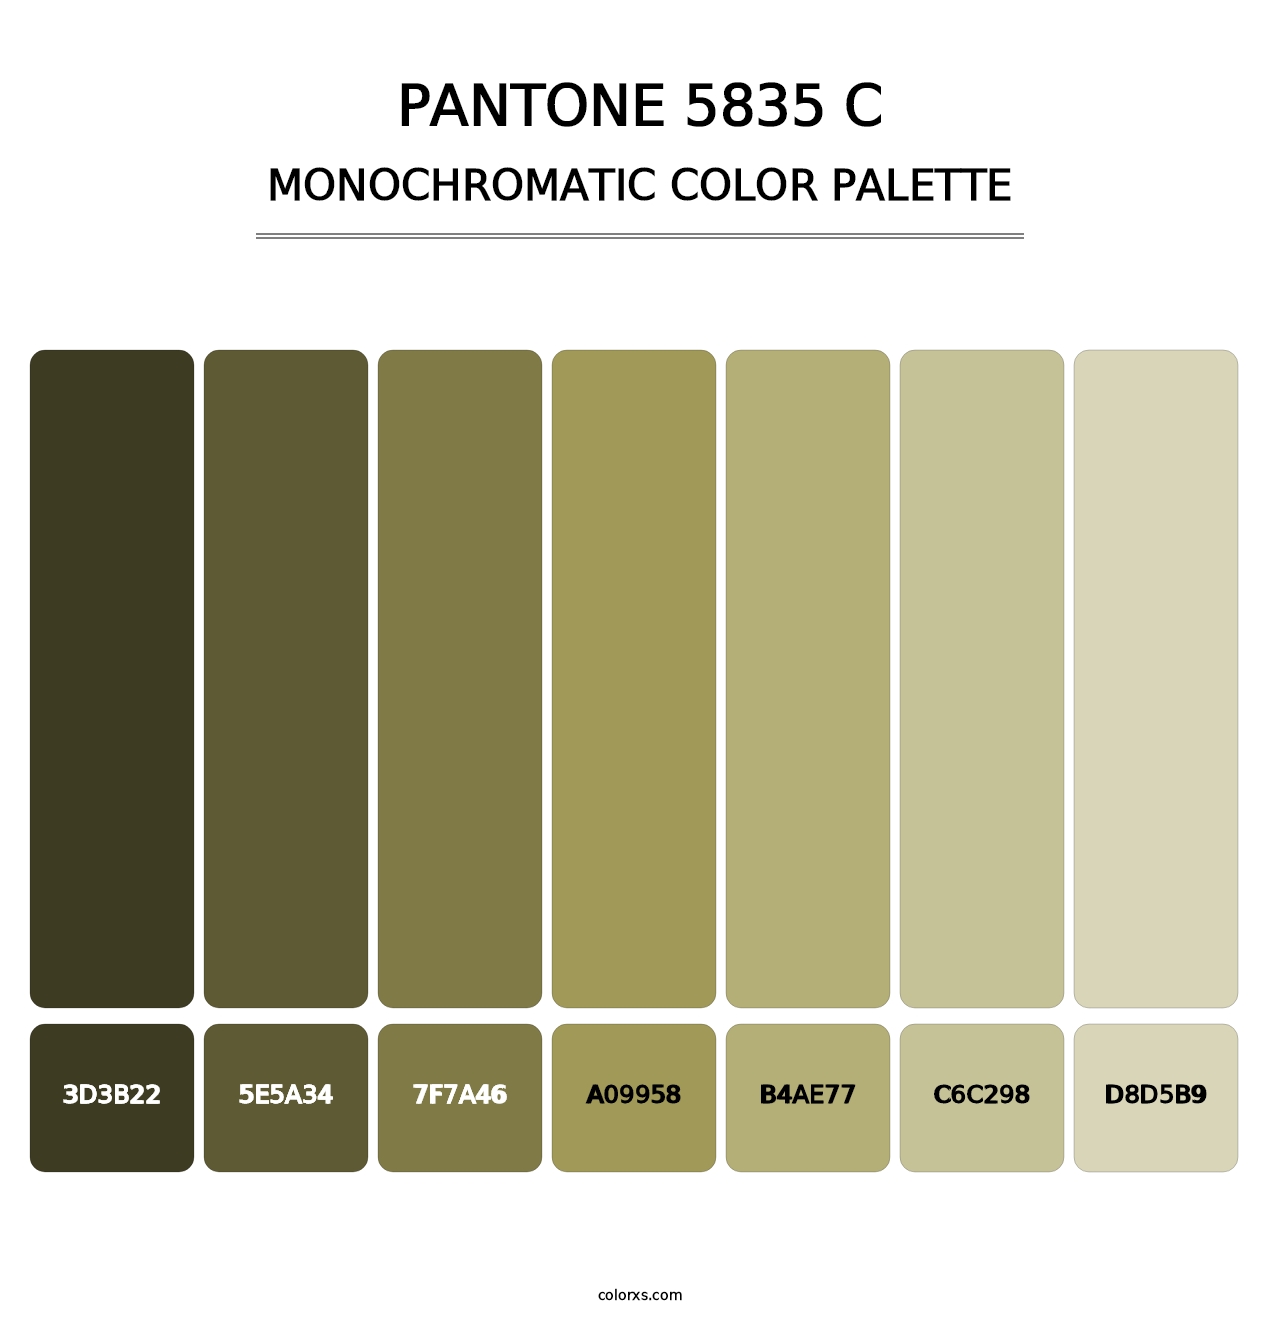 PANTONE 5835 C - Monochromatic Color Palette